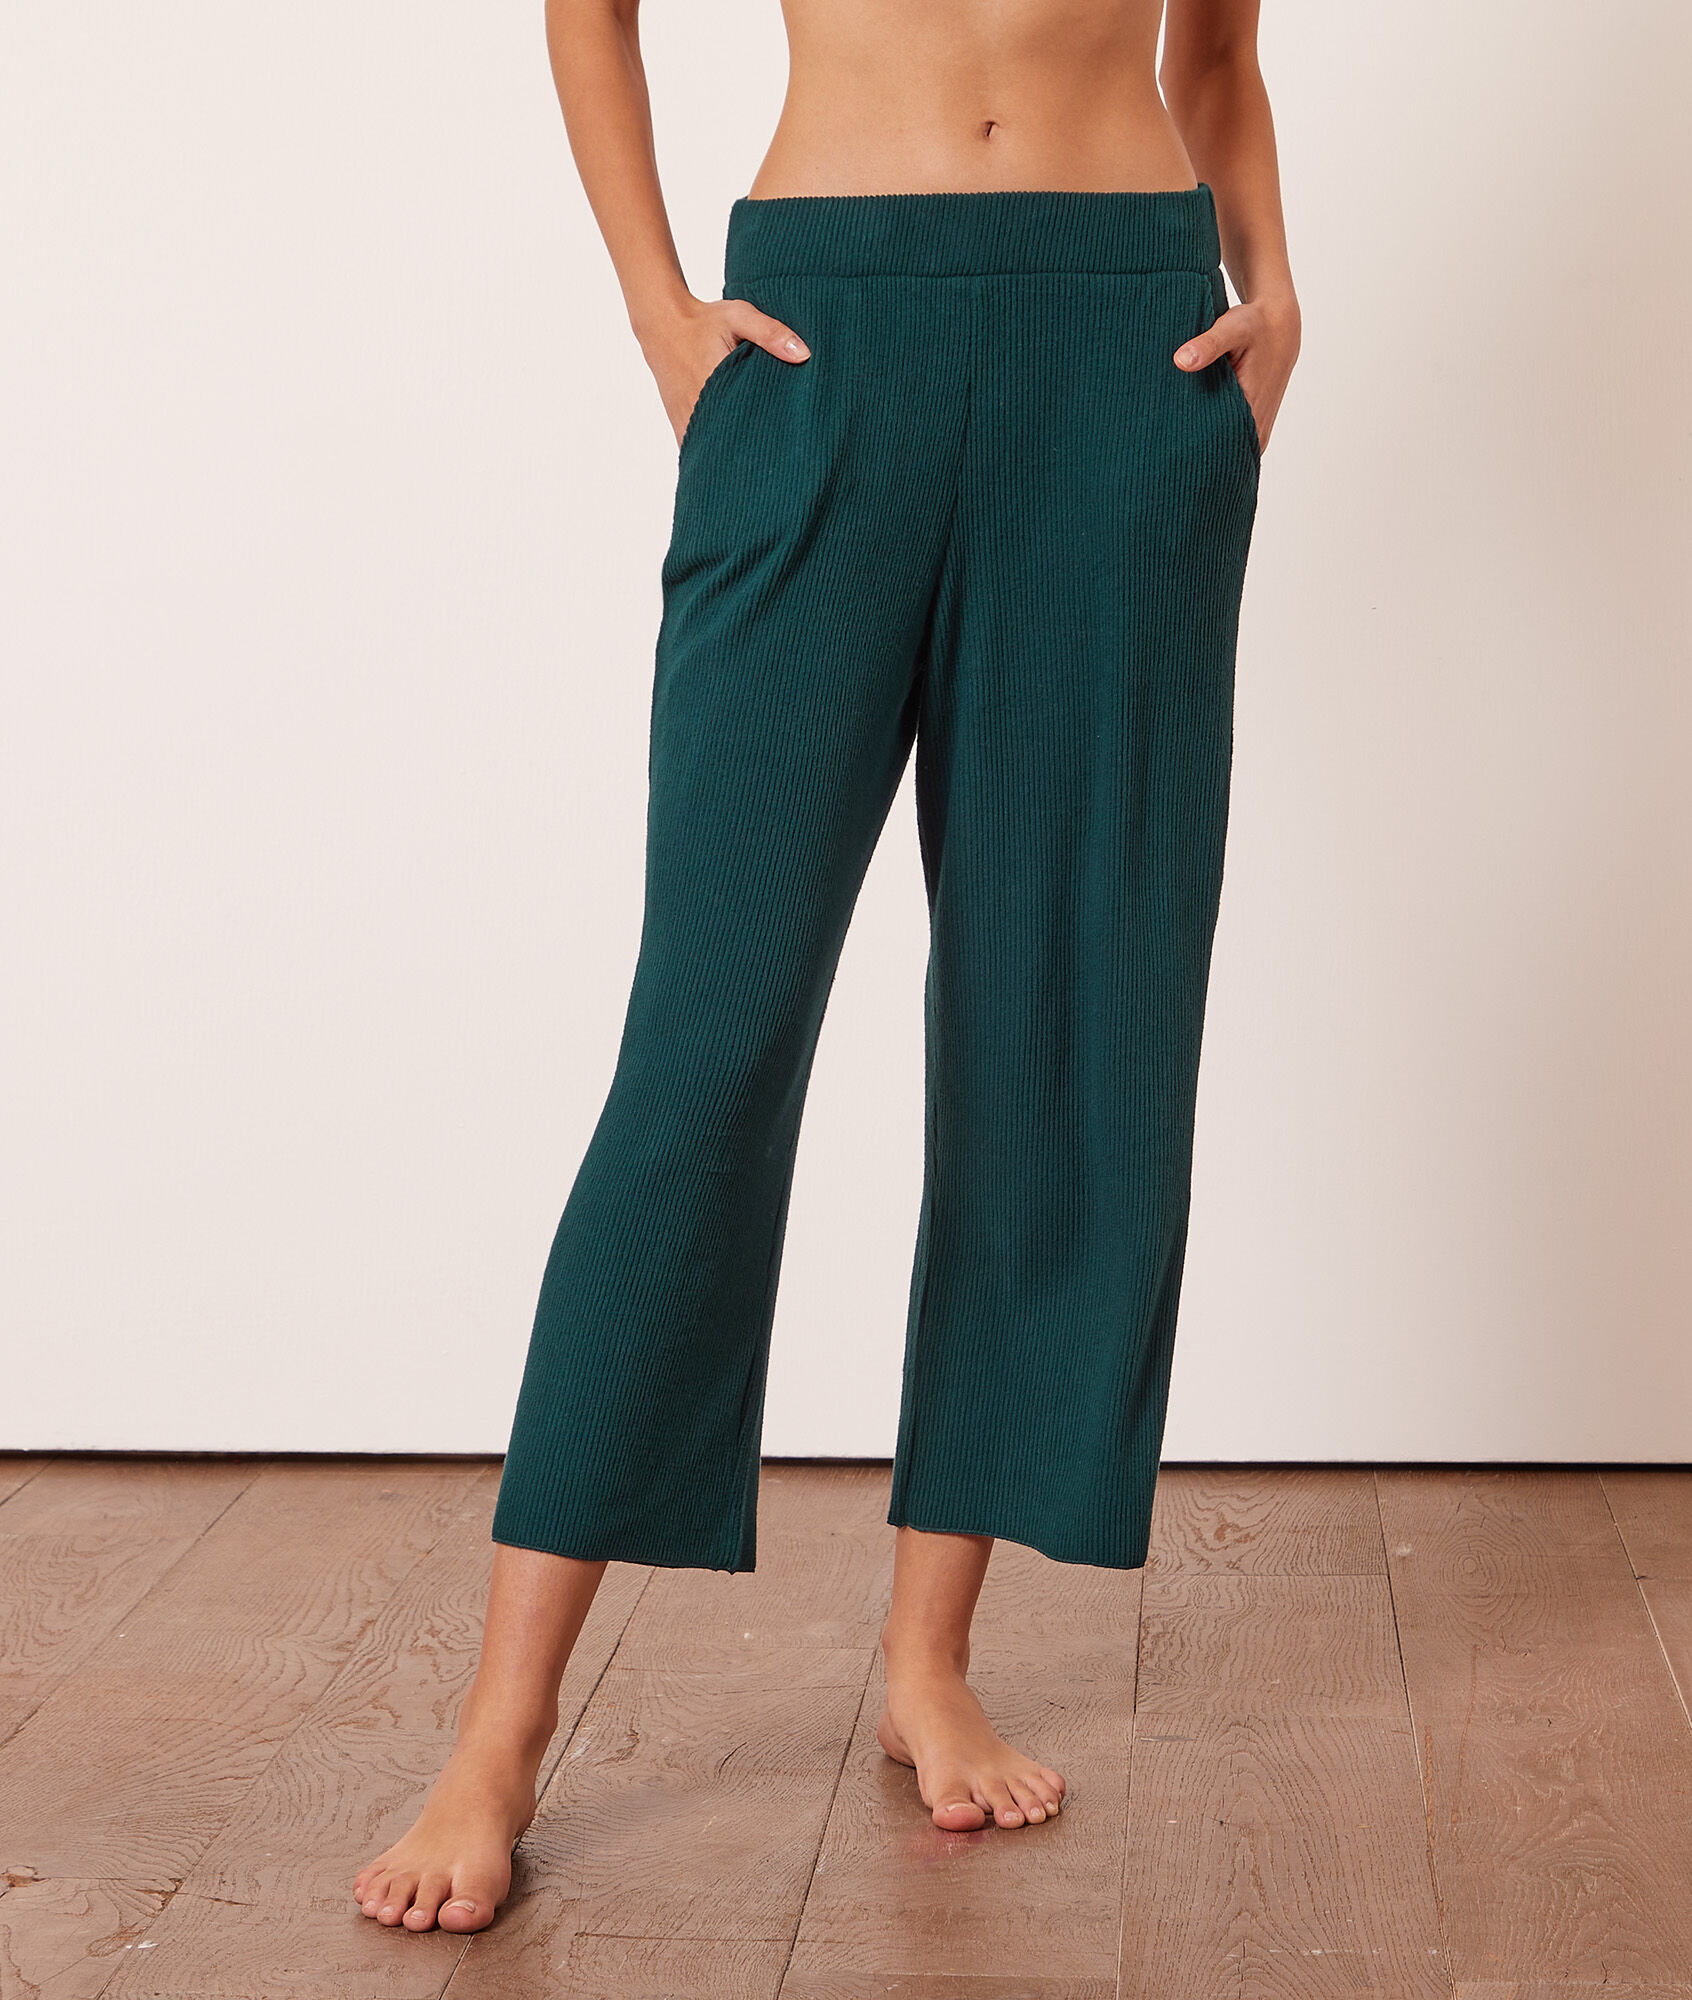 Amythis Spodnie Od Piżamy 7/8 - S - Zielony - Etam Etam